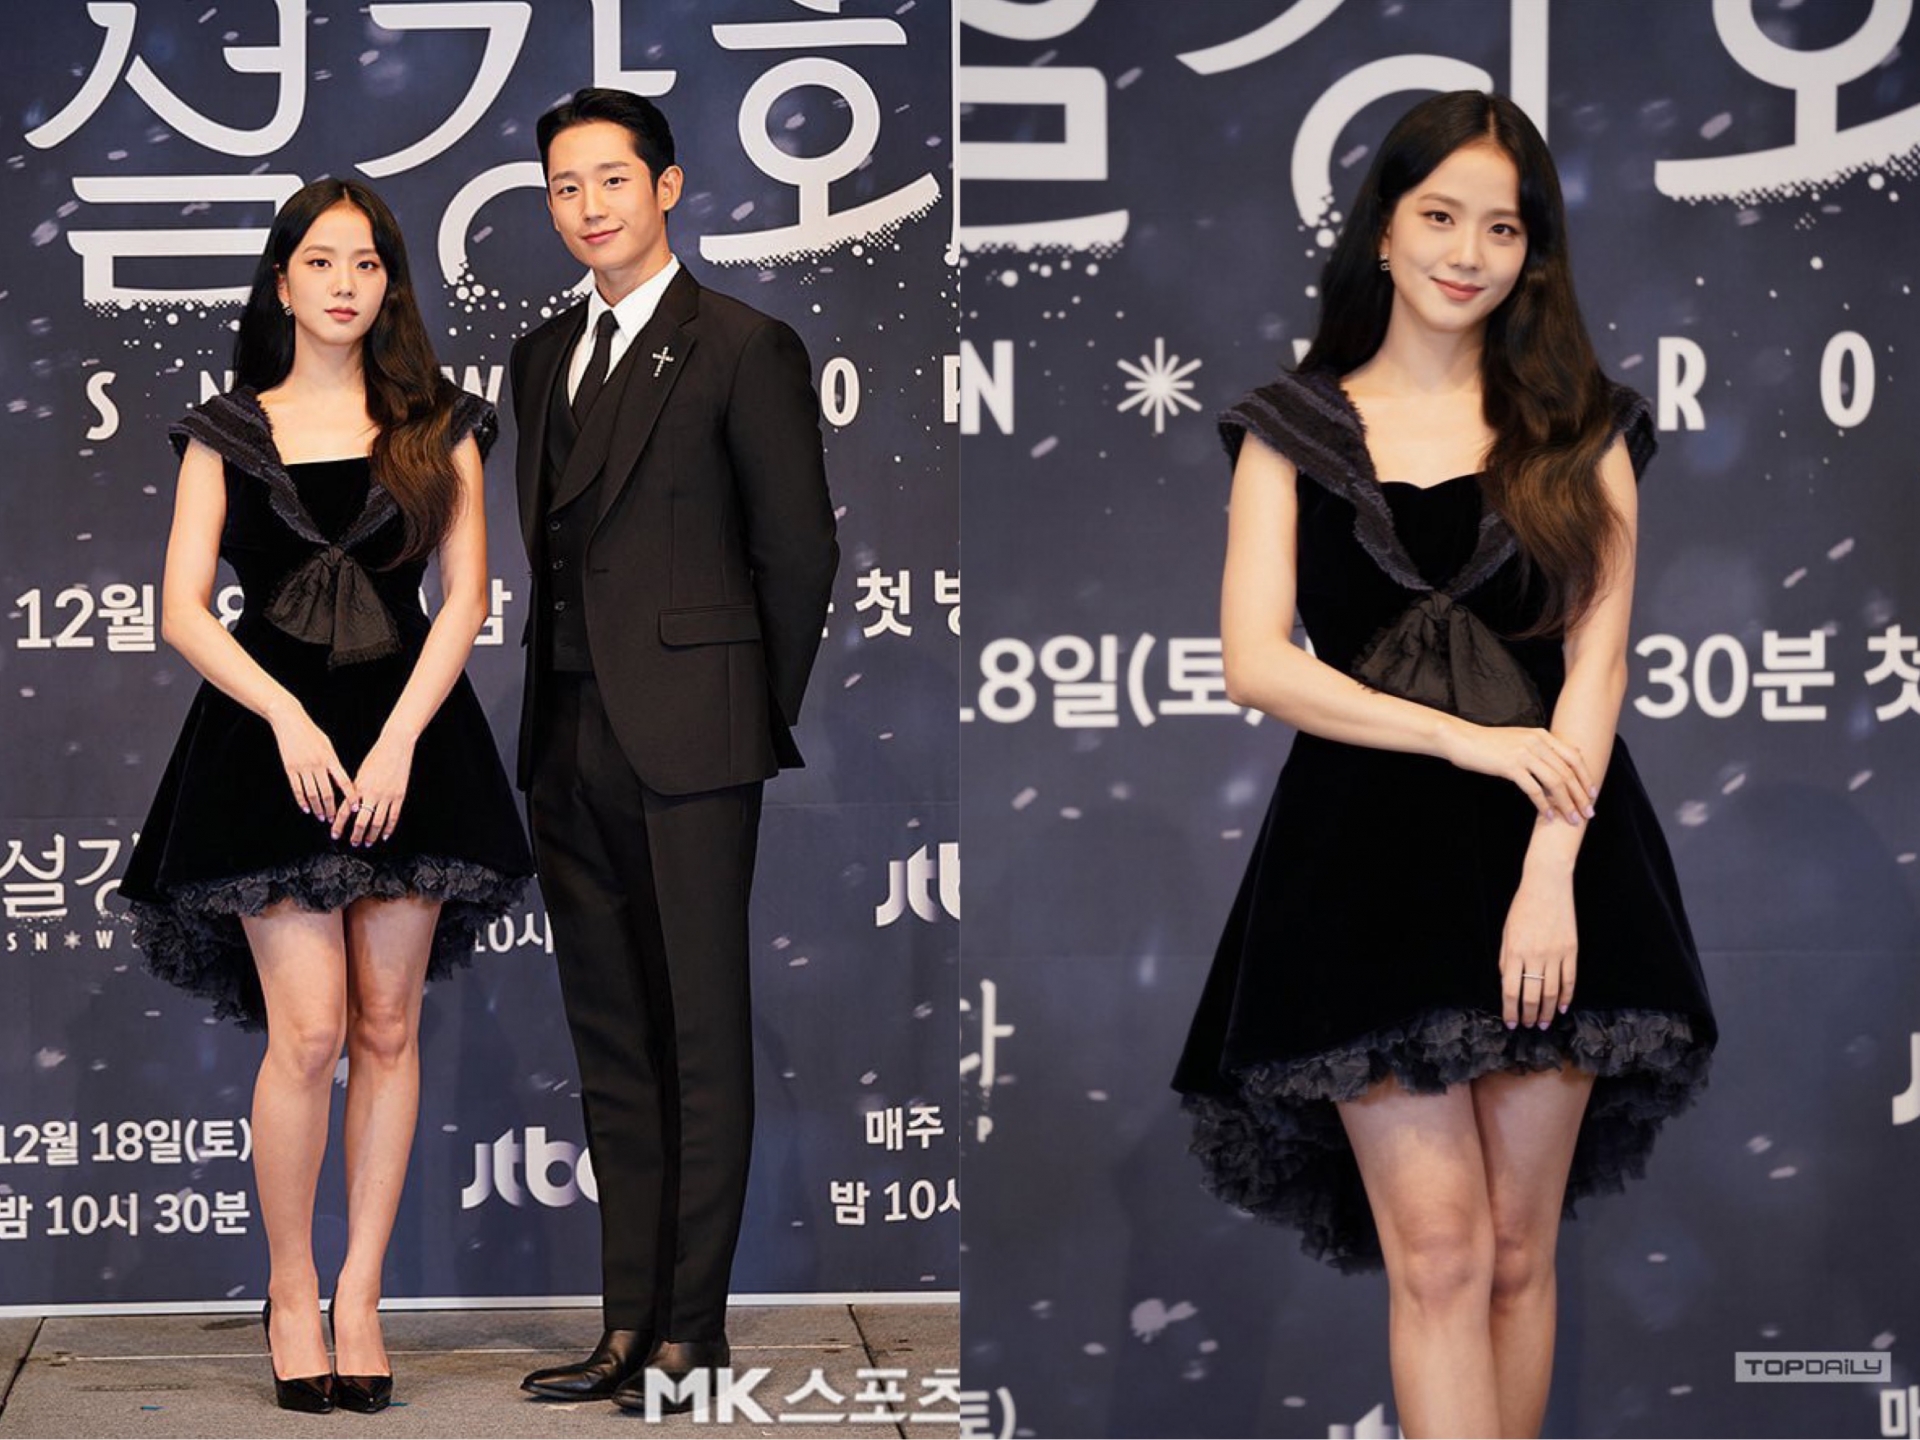 Buổi họp báo ra mắt bộ phim 'Snowdrop' của Jisoo và Jung Hae In trở thành chủ đề hot trên MXH trong ngày 16/12. Sự xuất hiện của cặp đôi 'trai xinh gái đẹp' đã thu hút sự chú ý của đông đảo netizen.